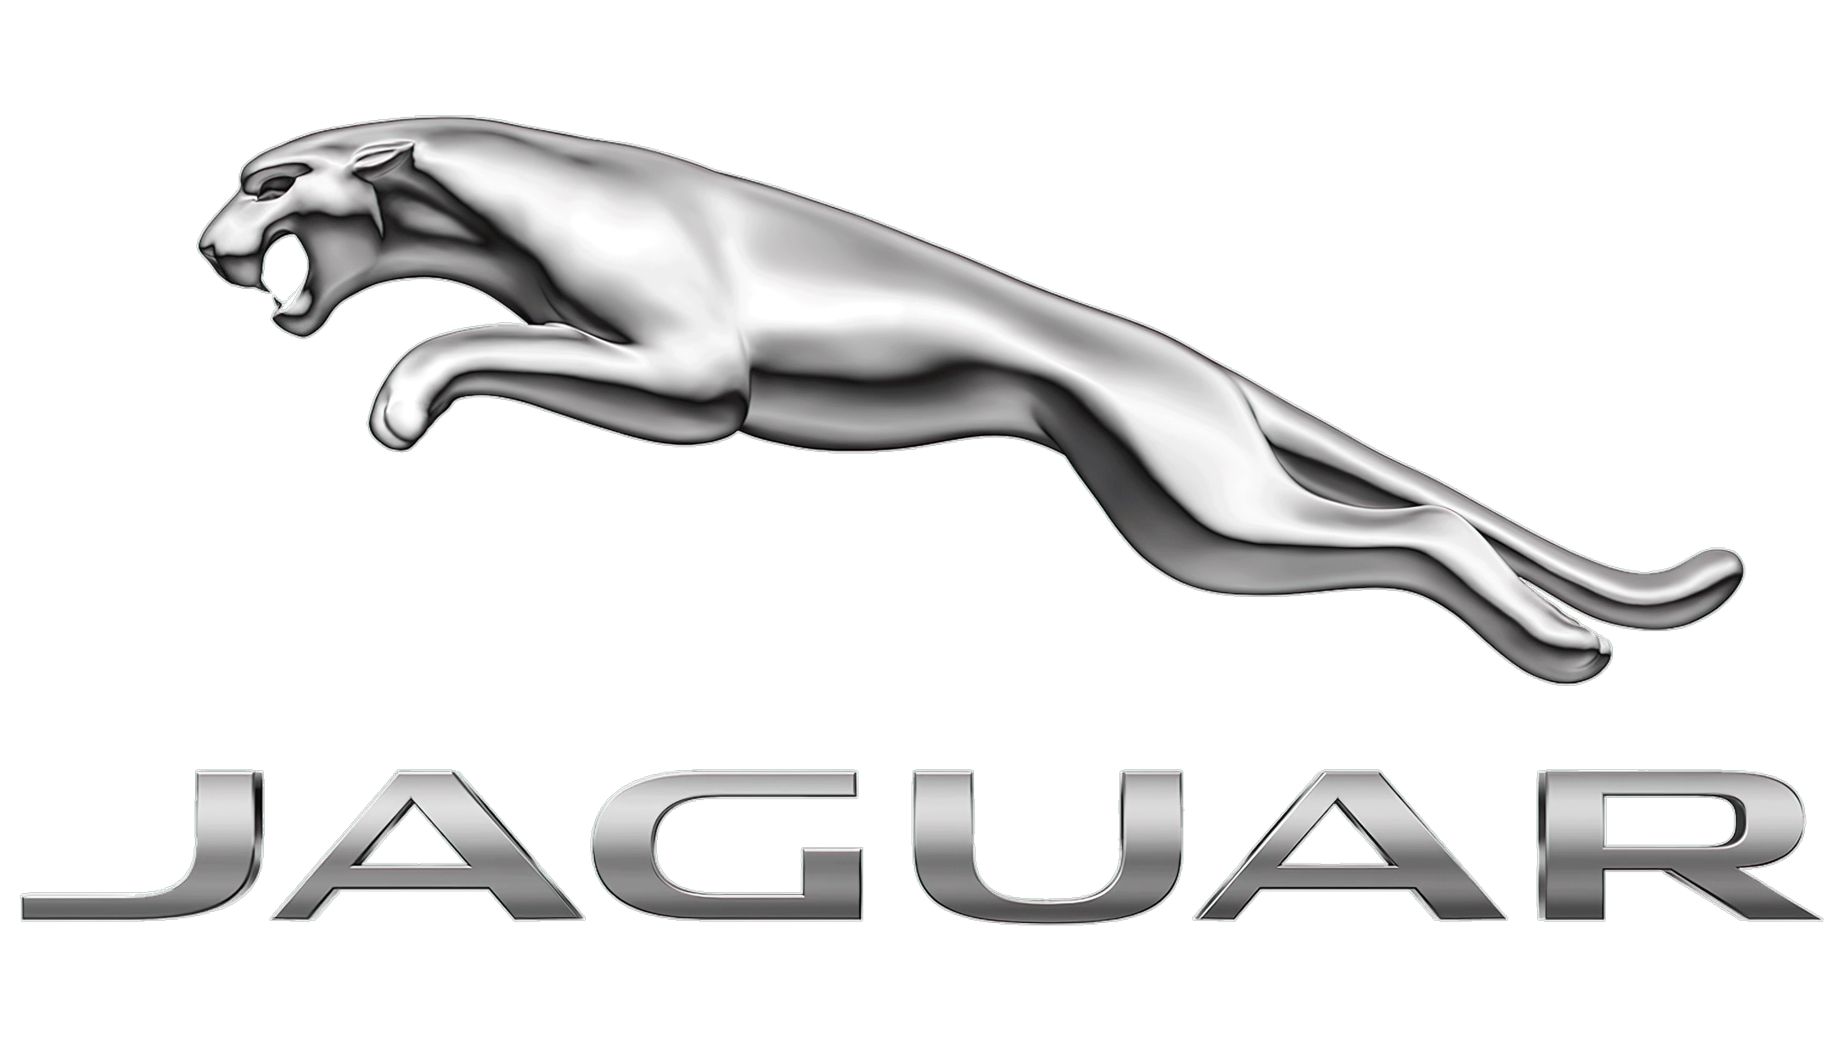 Jaguar sign 2012 present